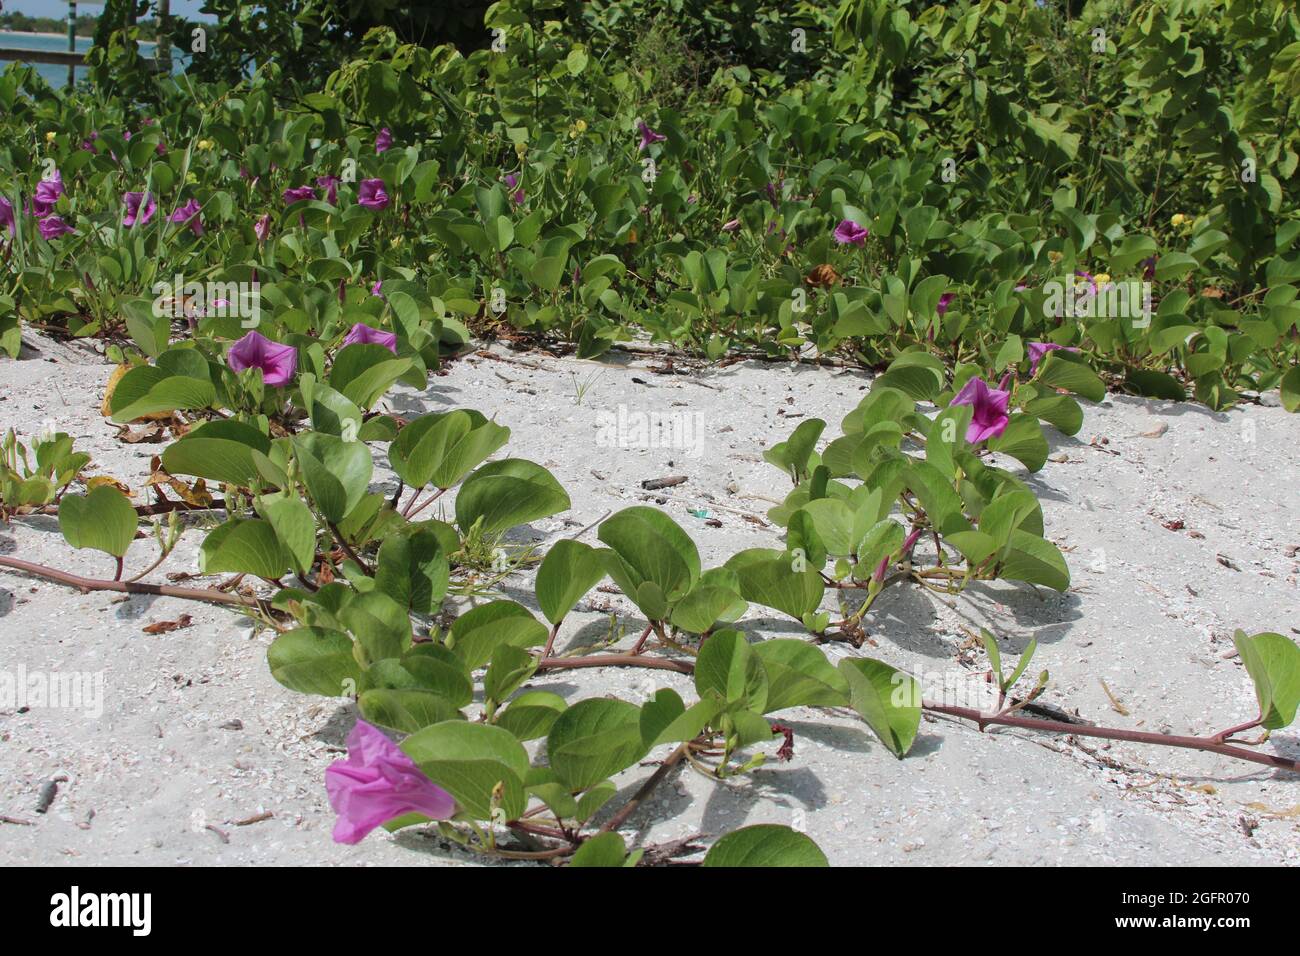 fiori viola su una vite nella sabbia Foto Stock